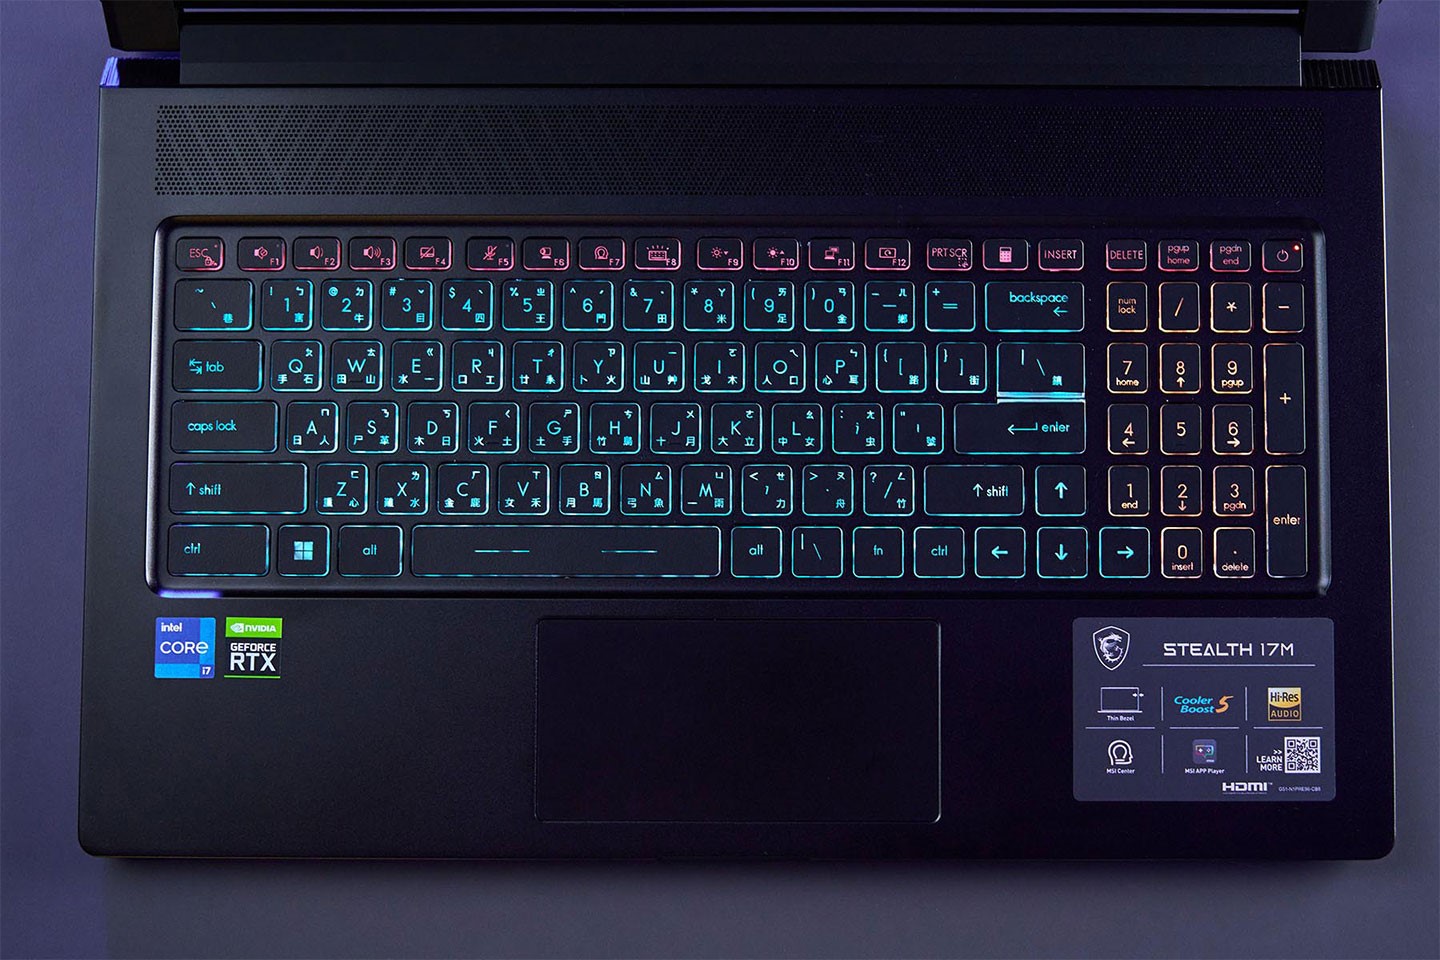 機身 C 面配置全尺寸島式鍵盤，配了色彩亮麗的背光燈效。